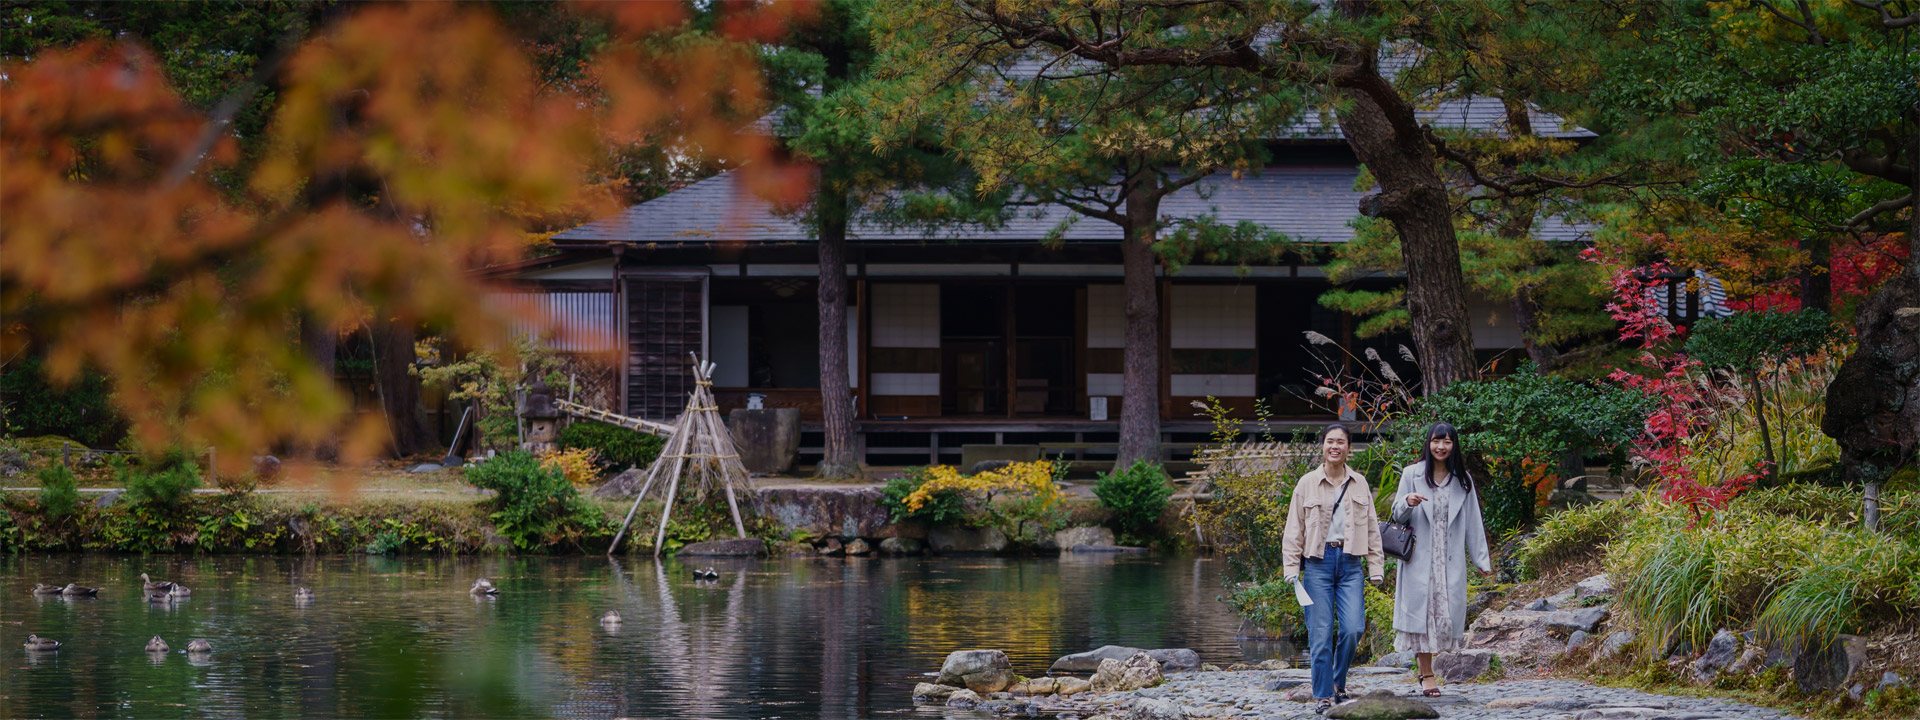 계절이 느껴지는 경치와, 일본다운 문화를 체감하는 여행